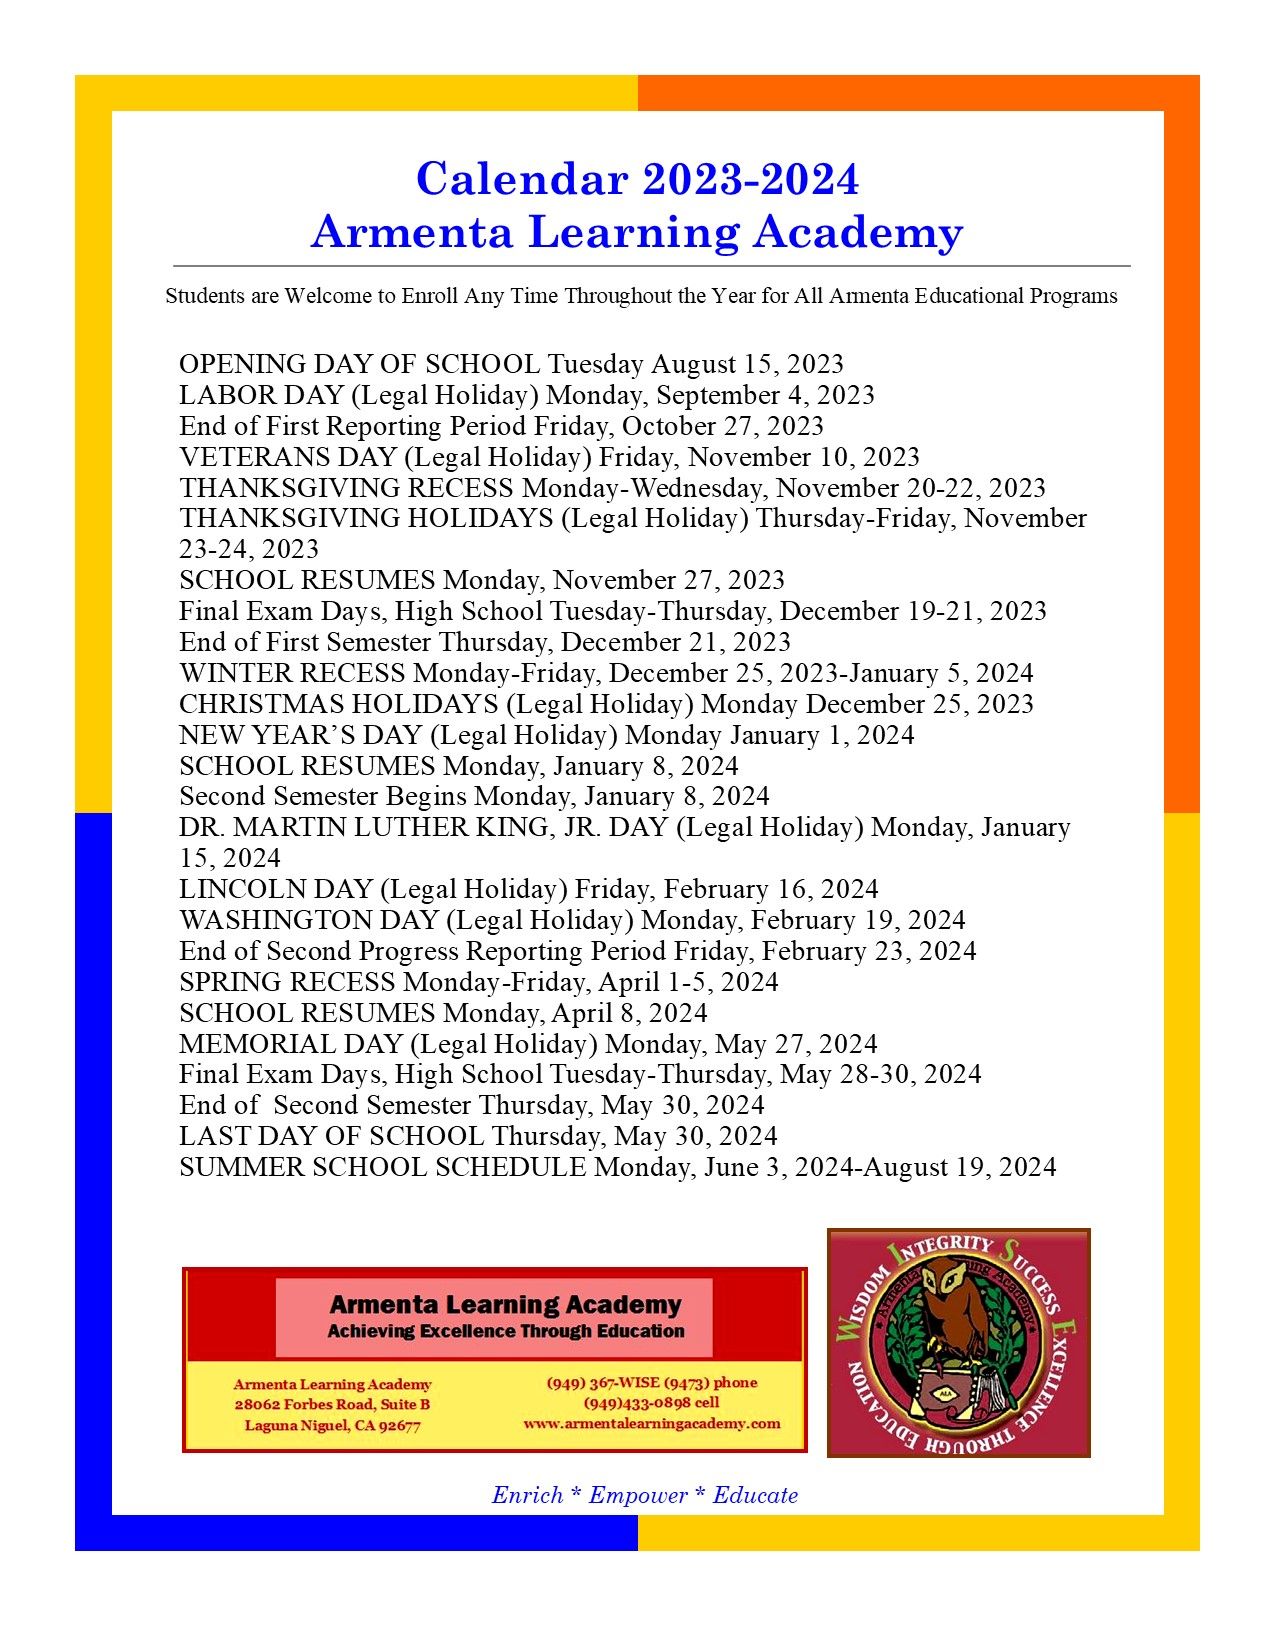 2018-2019 Calendar — Armenta Learning Academy in Laguna Niguel, CA